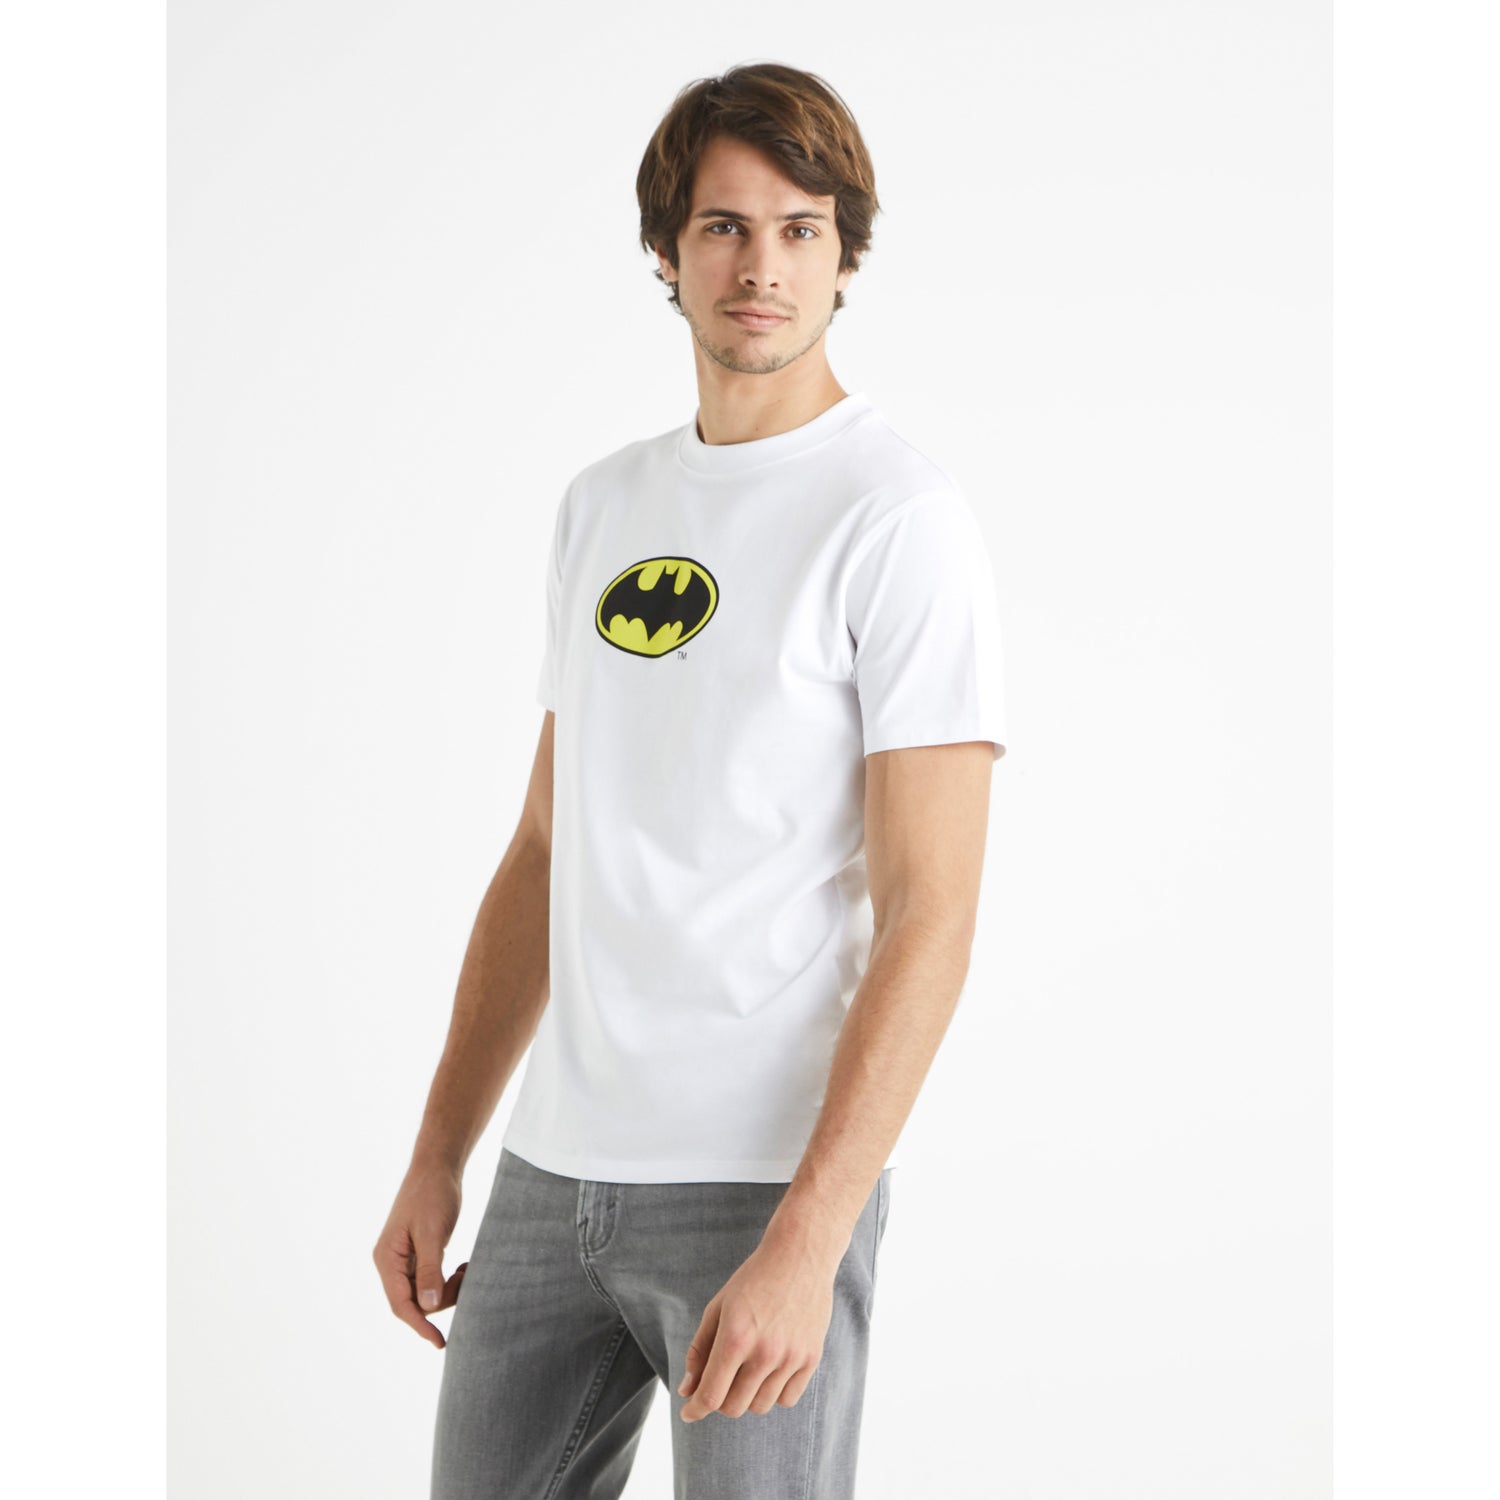 Batman - White Printed T-shirt (LBEBAT7)